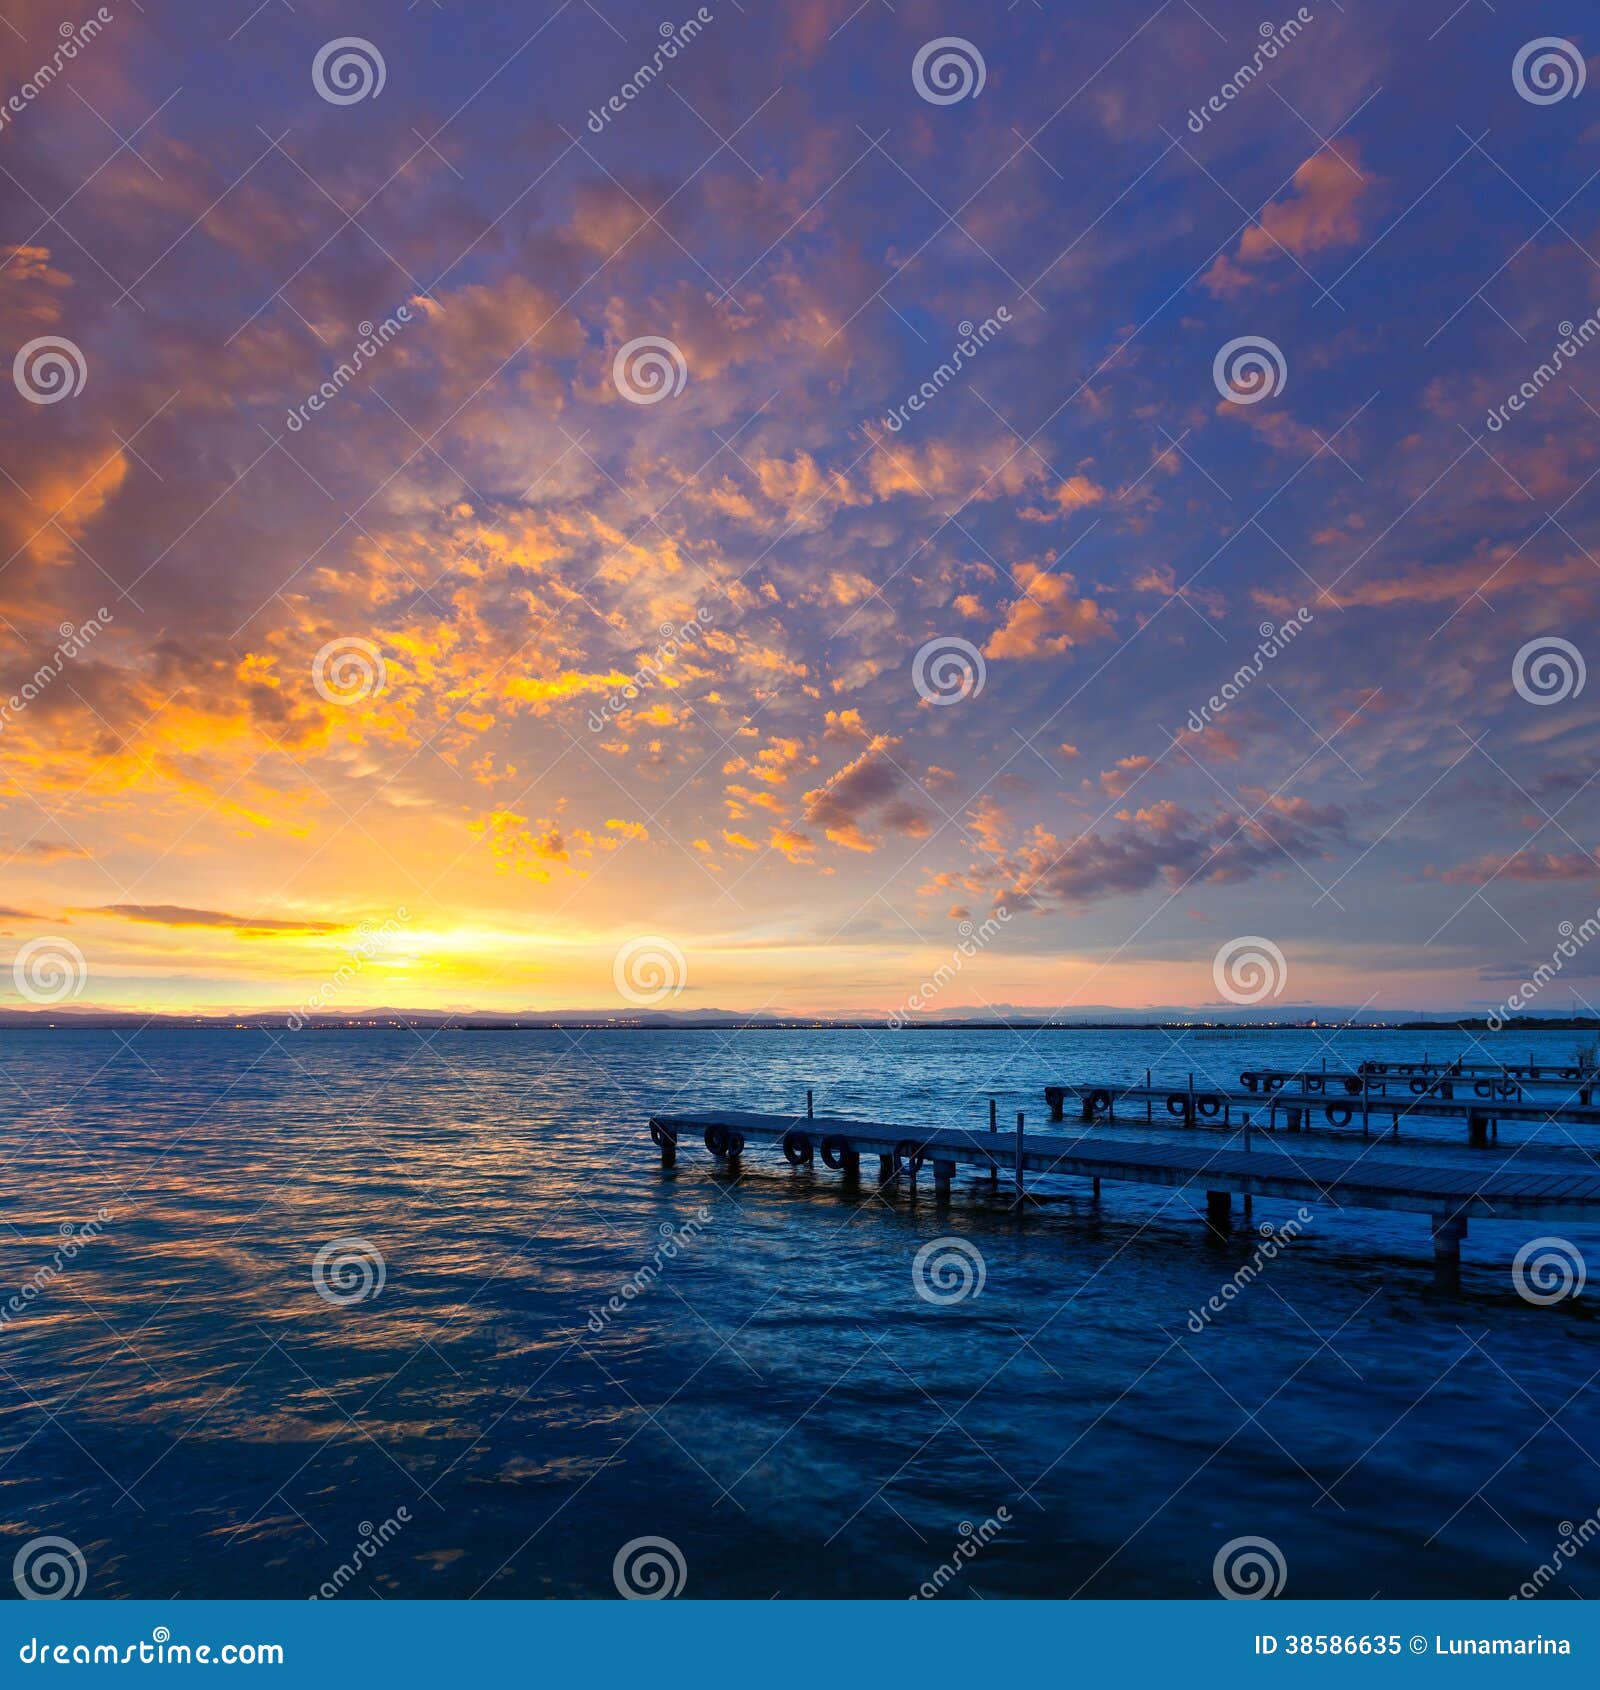 albufera sunset lake in valencia el saler spain